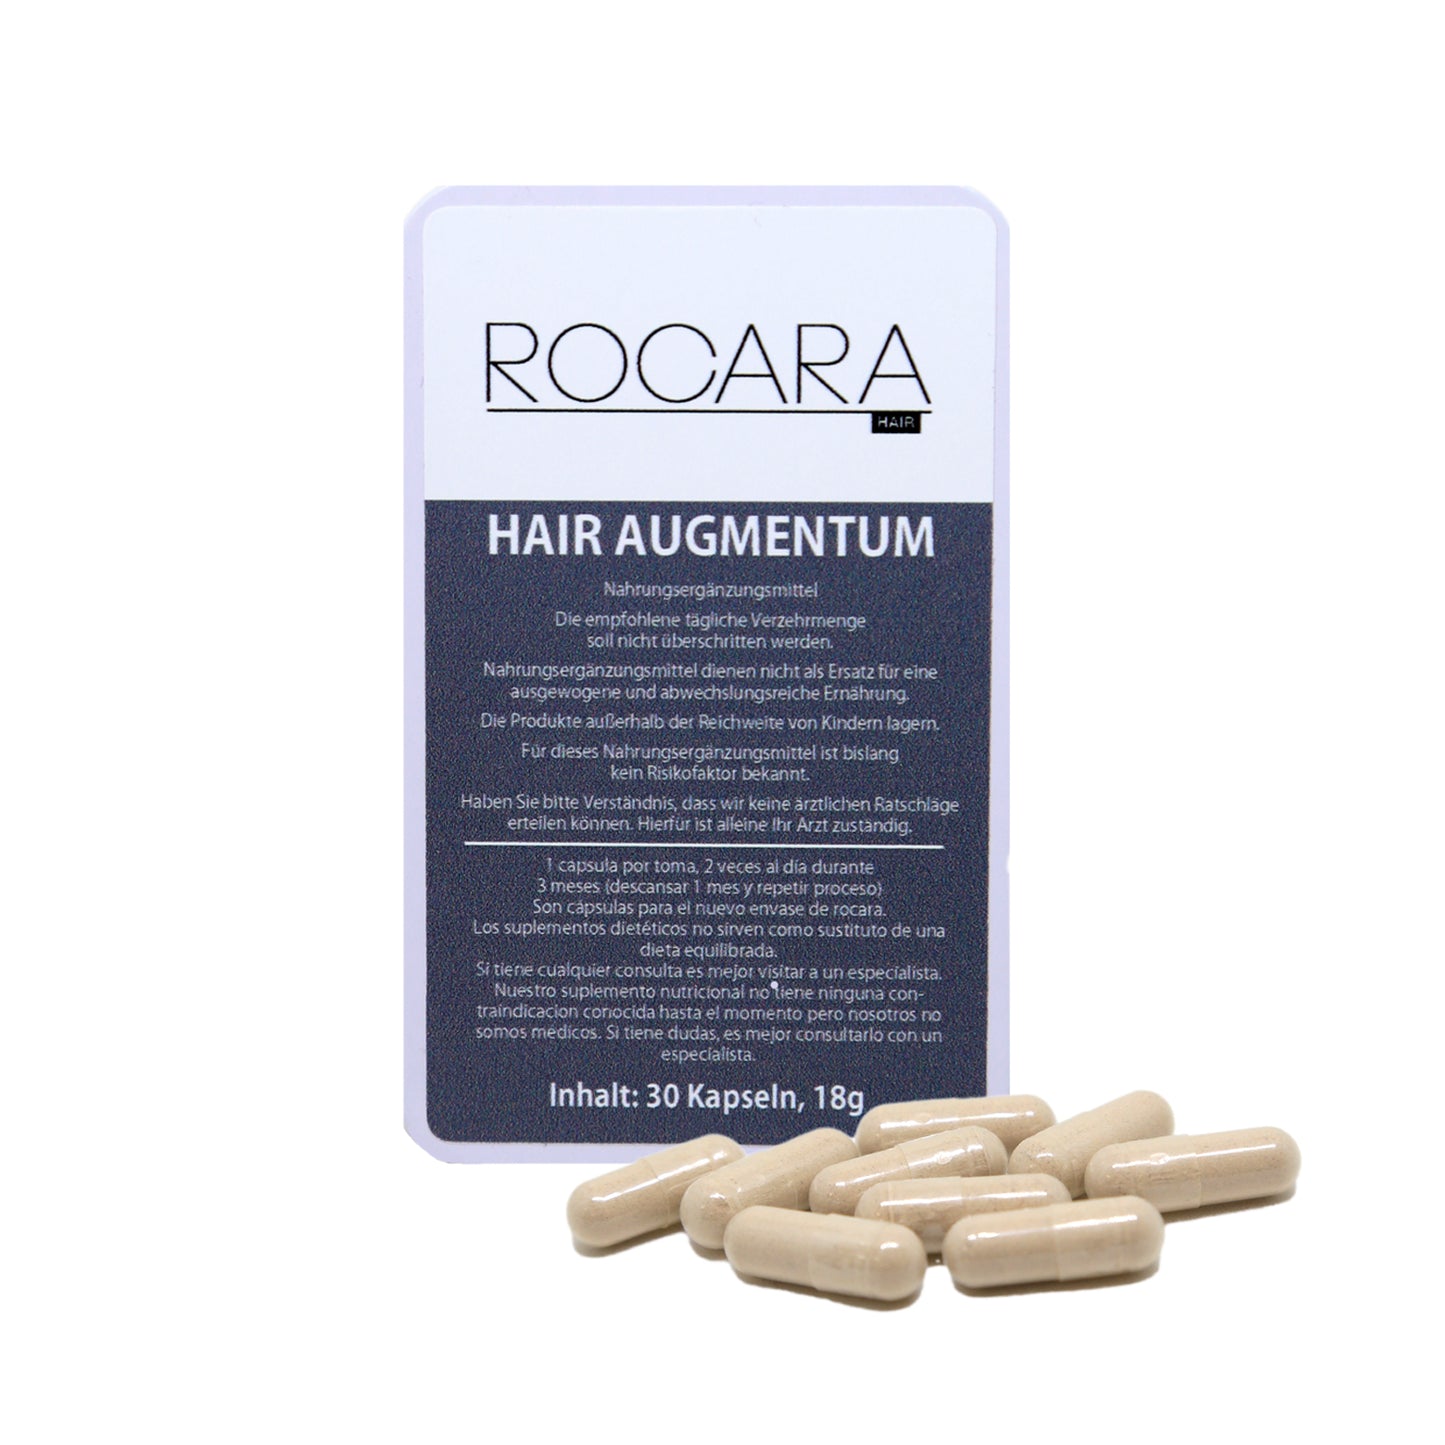 Rocara Hair - HAIR AUGMENTUM - Capsules for hair growth - 30 capsules